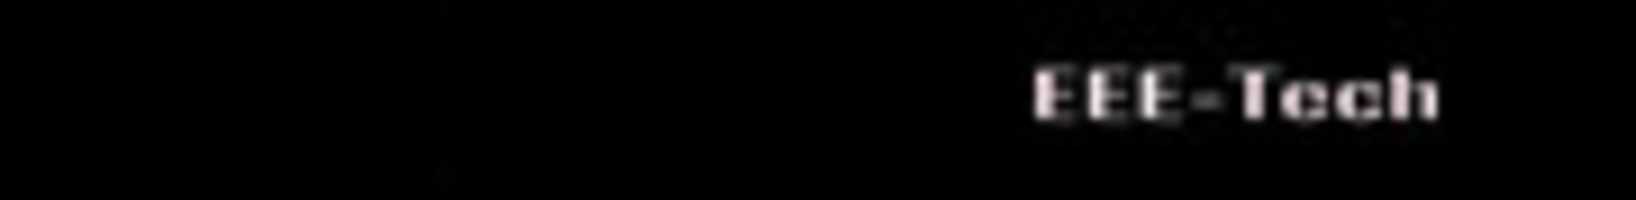 GIMP ഓൺലൈൻ ഇമേജ് എഡിറ്റർ ഉപയോഗിച്ച് എഡിറ്റ് ചെയ്യേണ്ട 728x 90 സൗജന്യ ഫോട്ടോയോ ചിത്രമോ സൗജന്യമായി ഡൗൺലോഡ് ചെയ്യുക